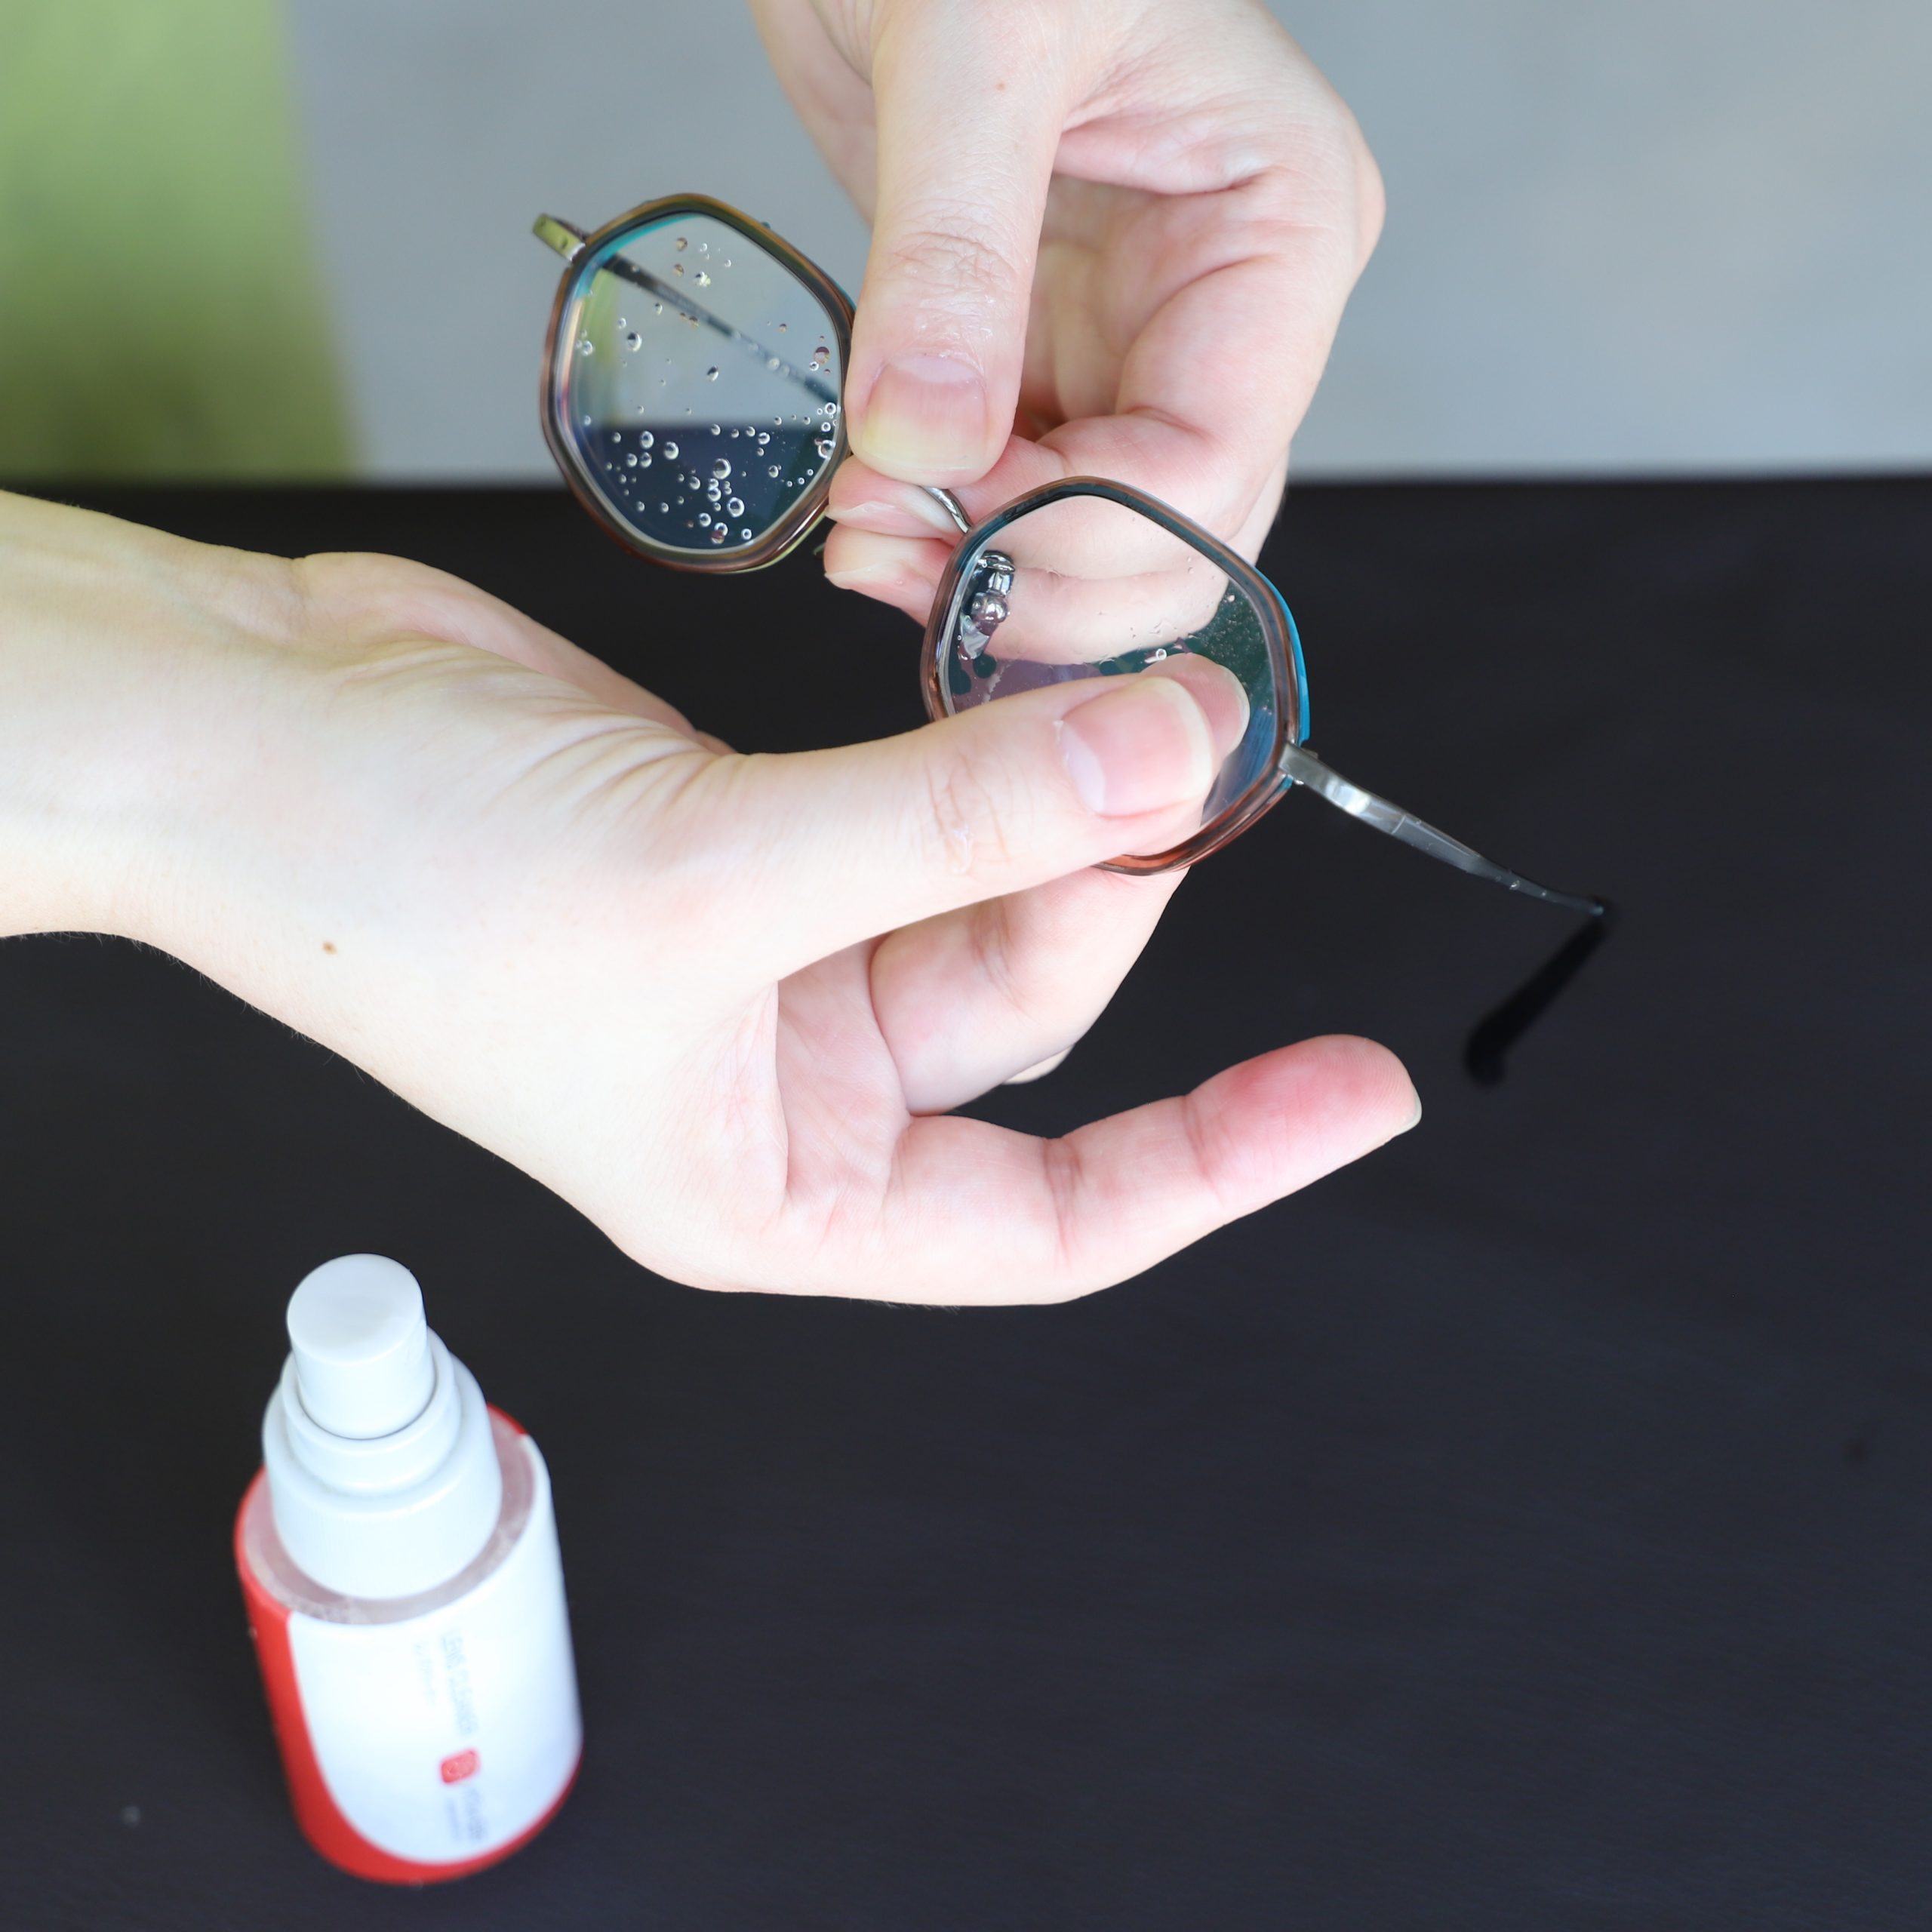 ②メガネクリーナーをレンズに吹きかけ、汚れを浮かすように指で軽くなじませます。